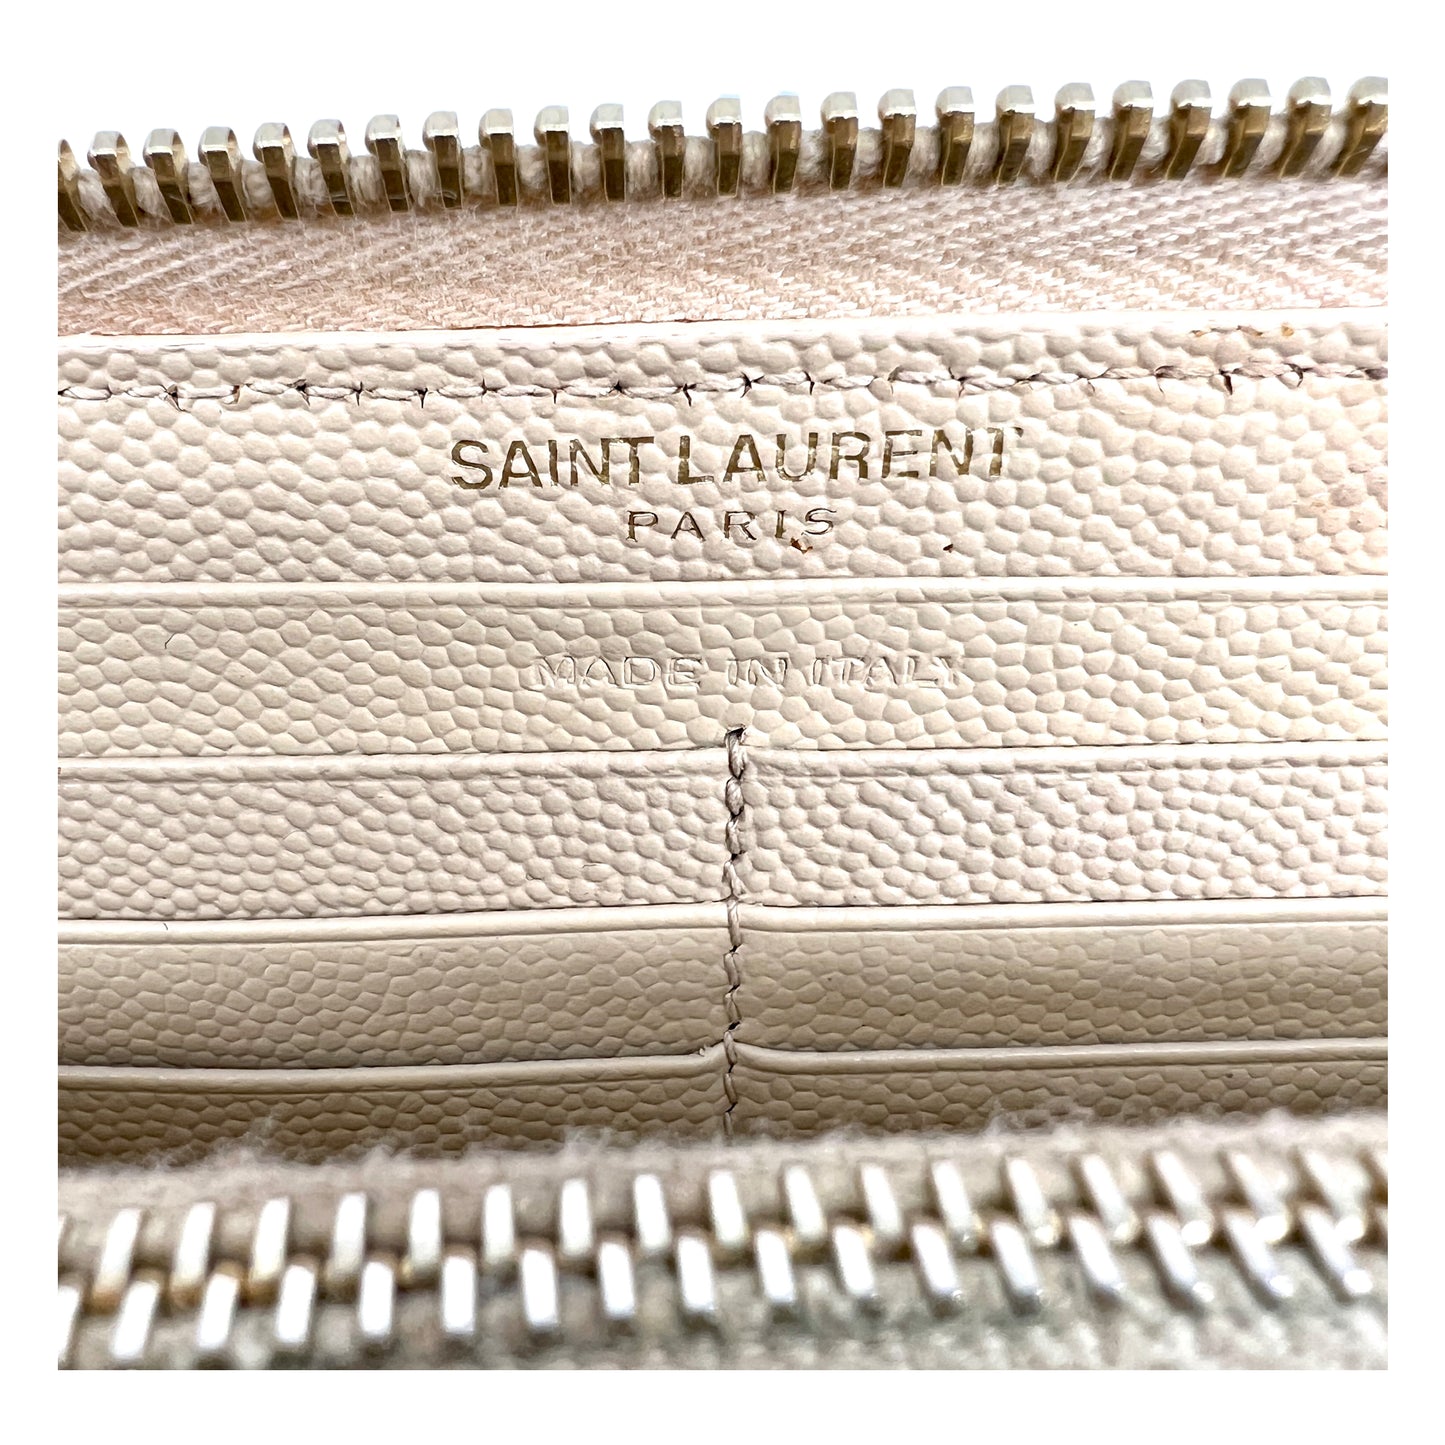 Saint Laurent Cassandre Matelassé Zip Around Wallet in Grain de Poudre Embossed Leather with YSL Emblem